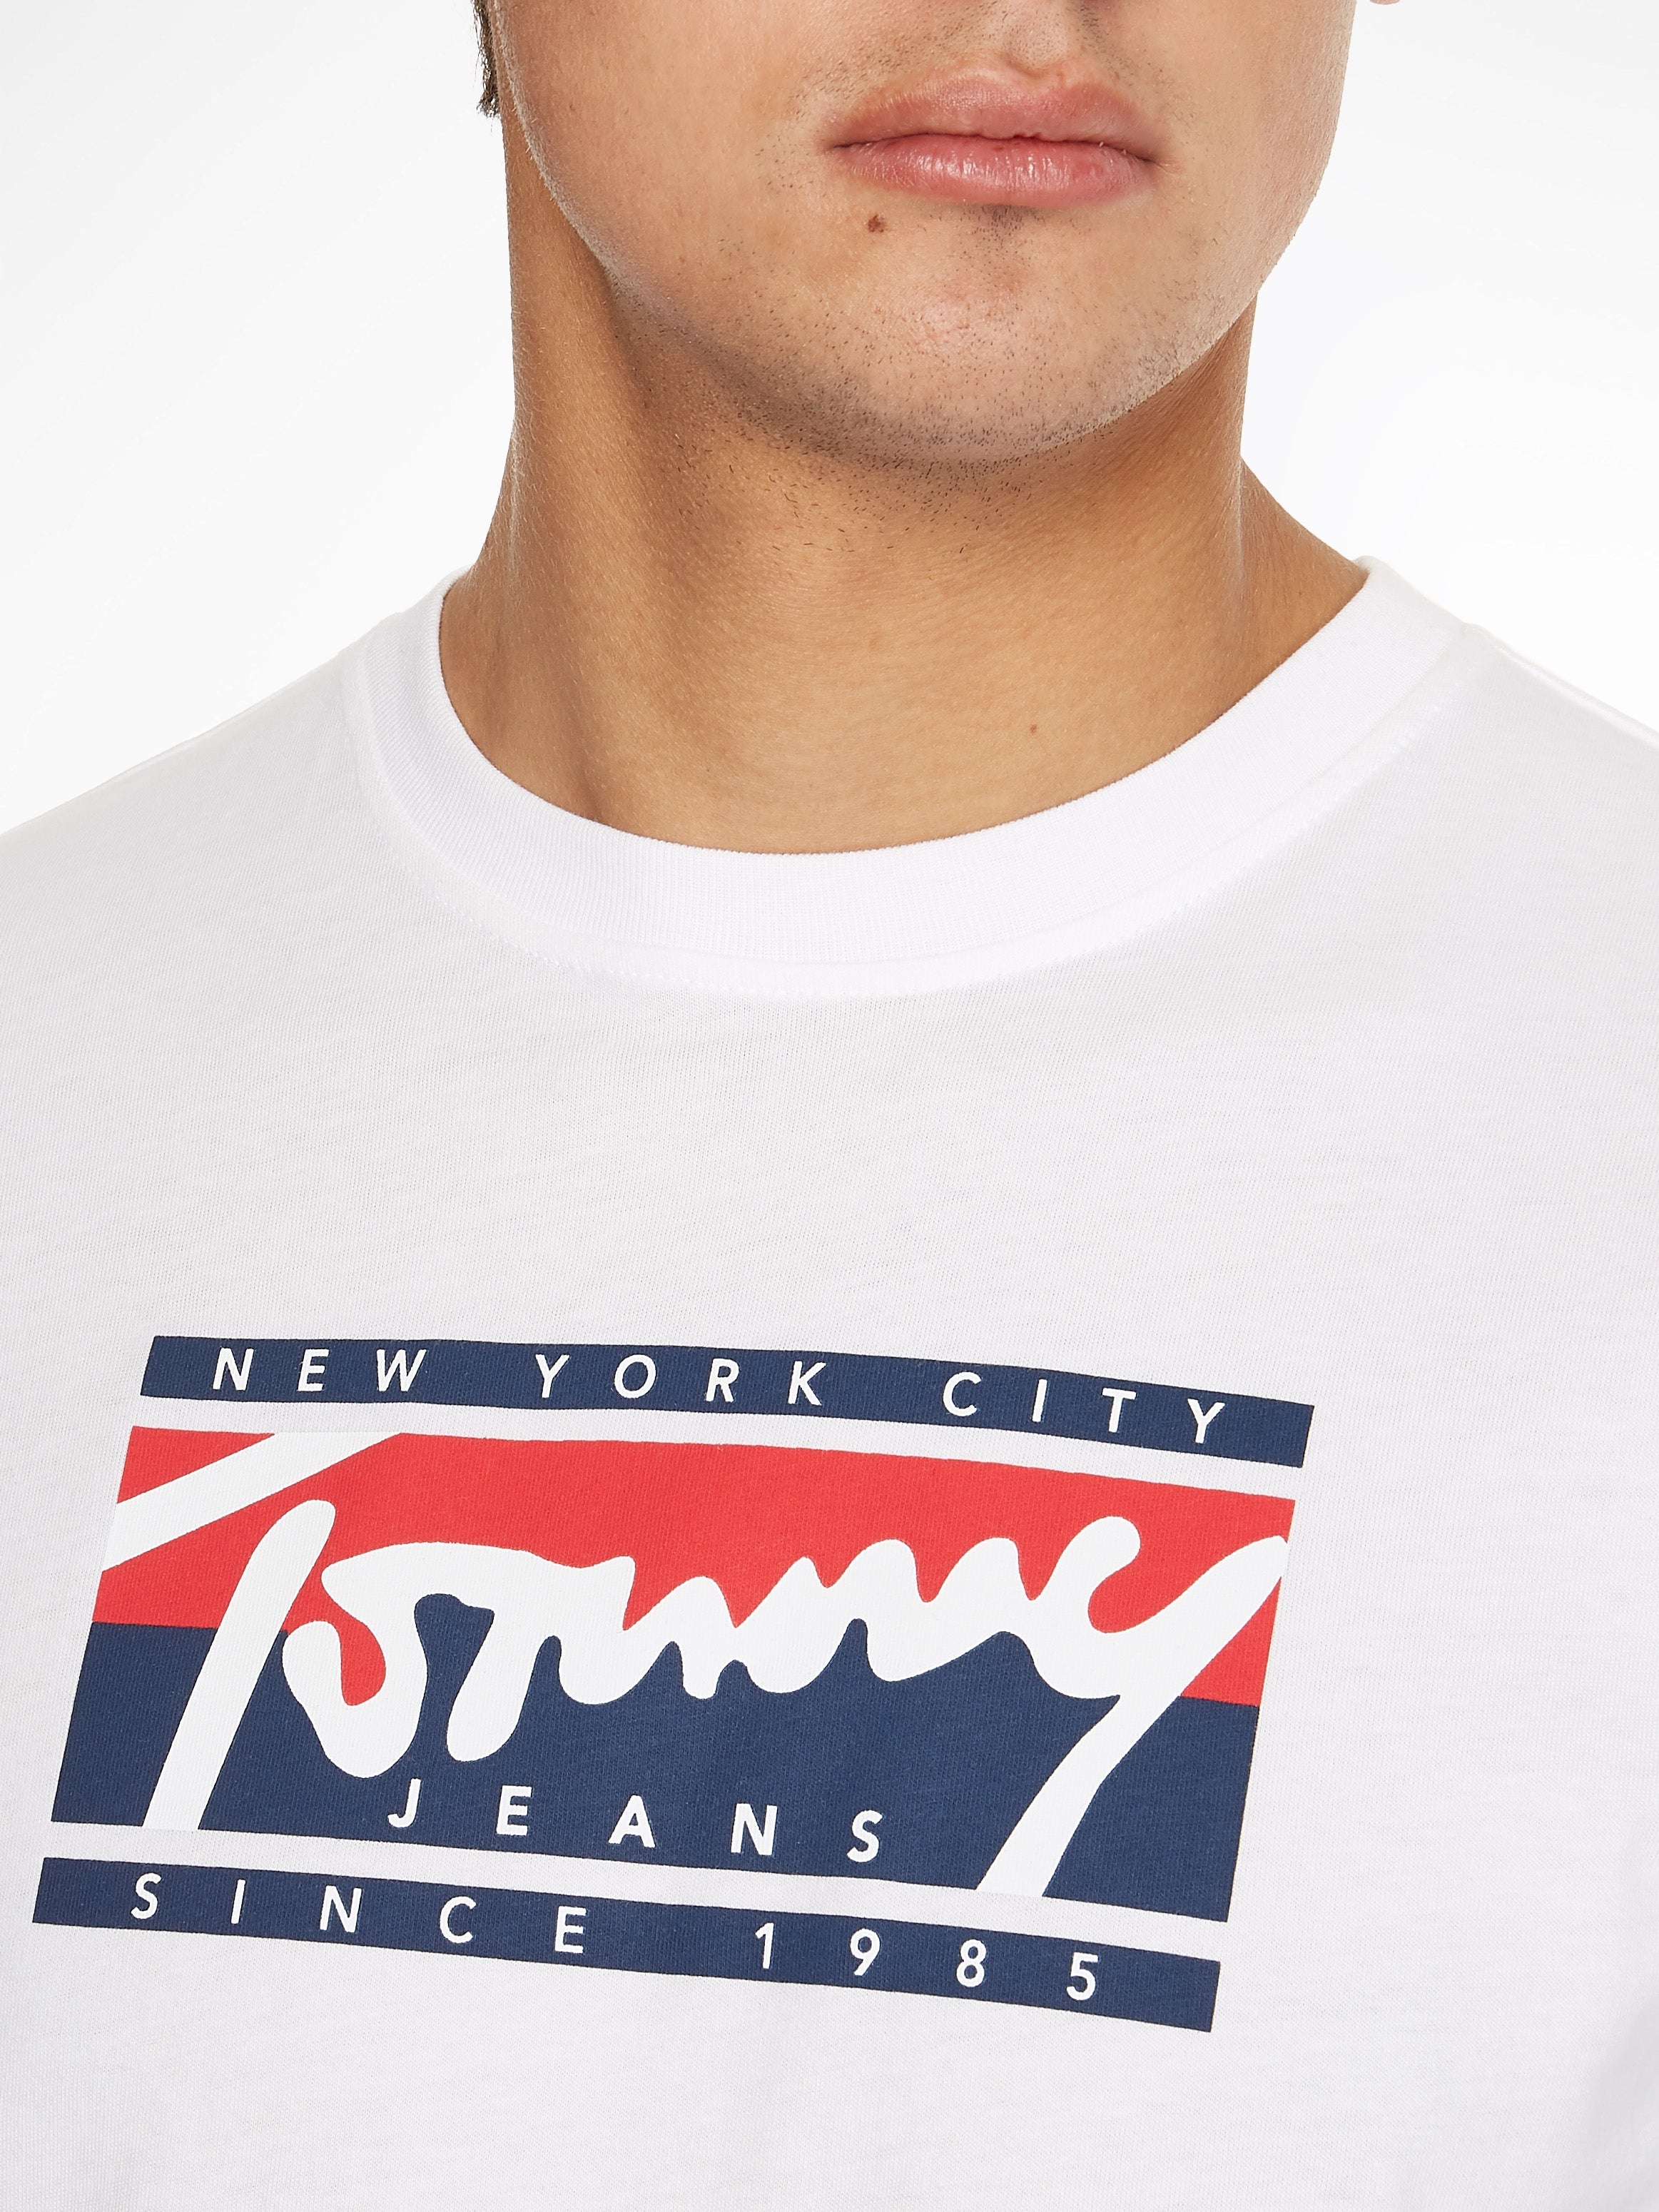 T-shirt signature Tommy Jeans blanc pour homme | Georgespaul